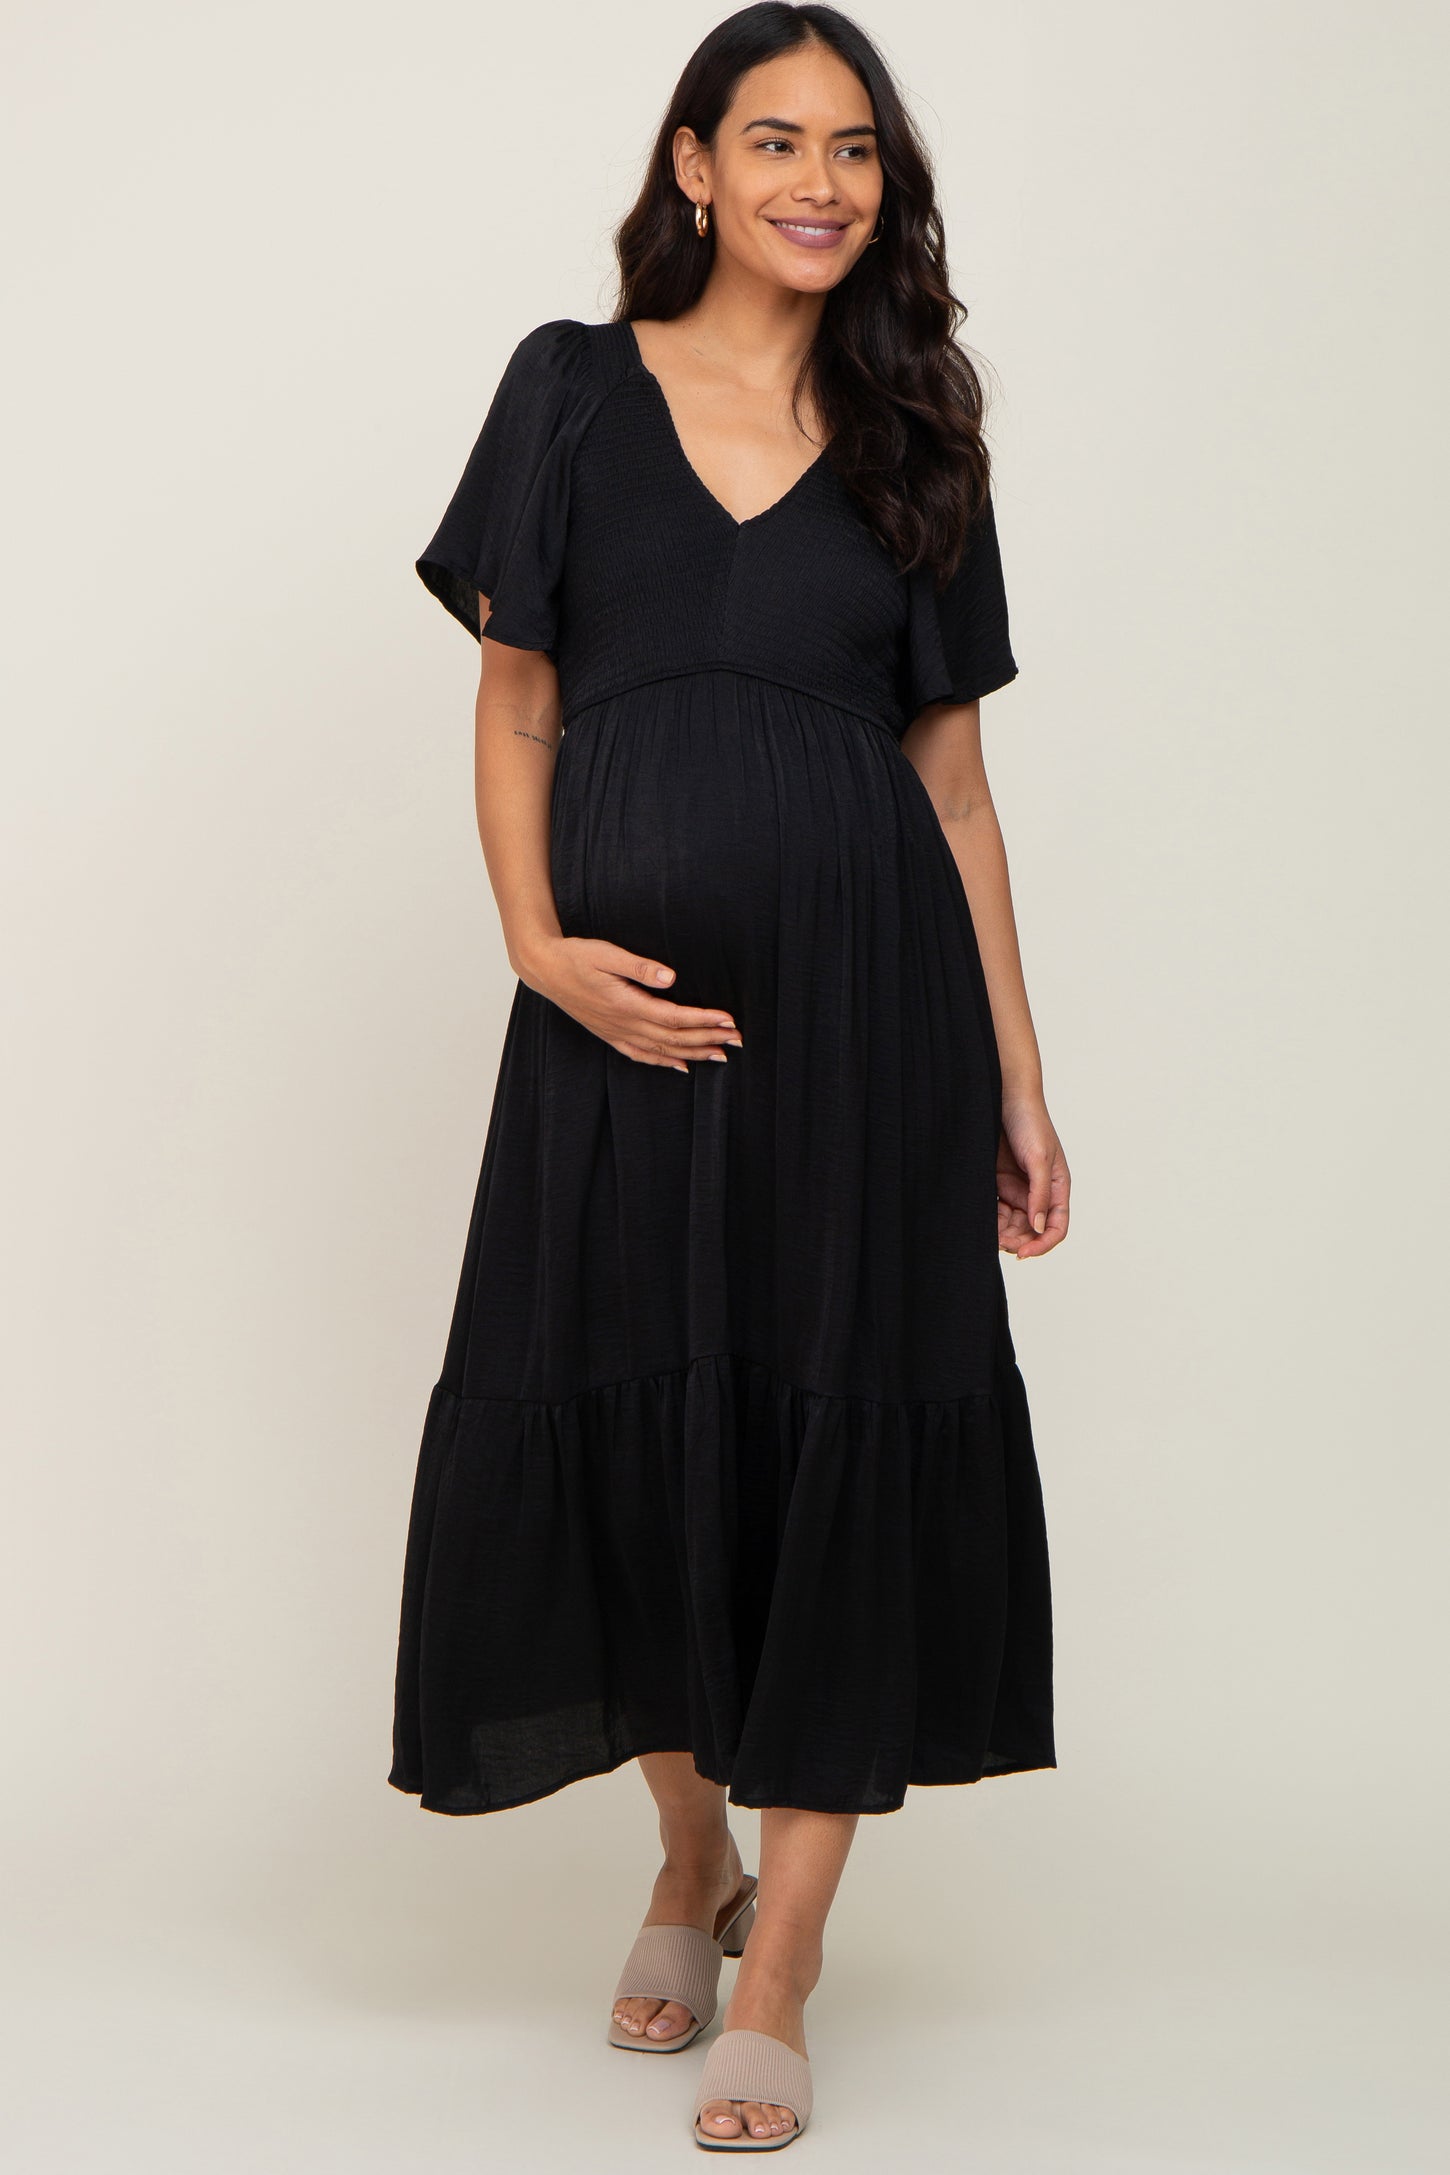 Black Satin Smocked Maternity Midi Dress